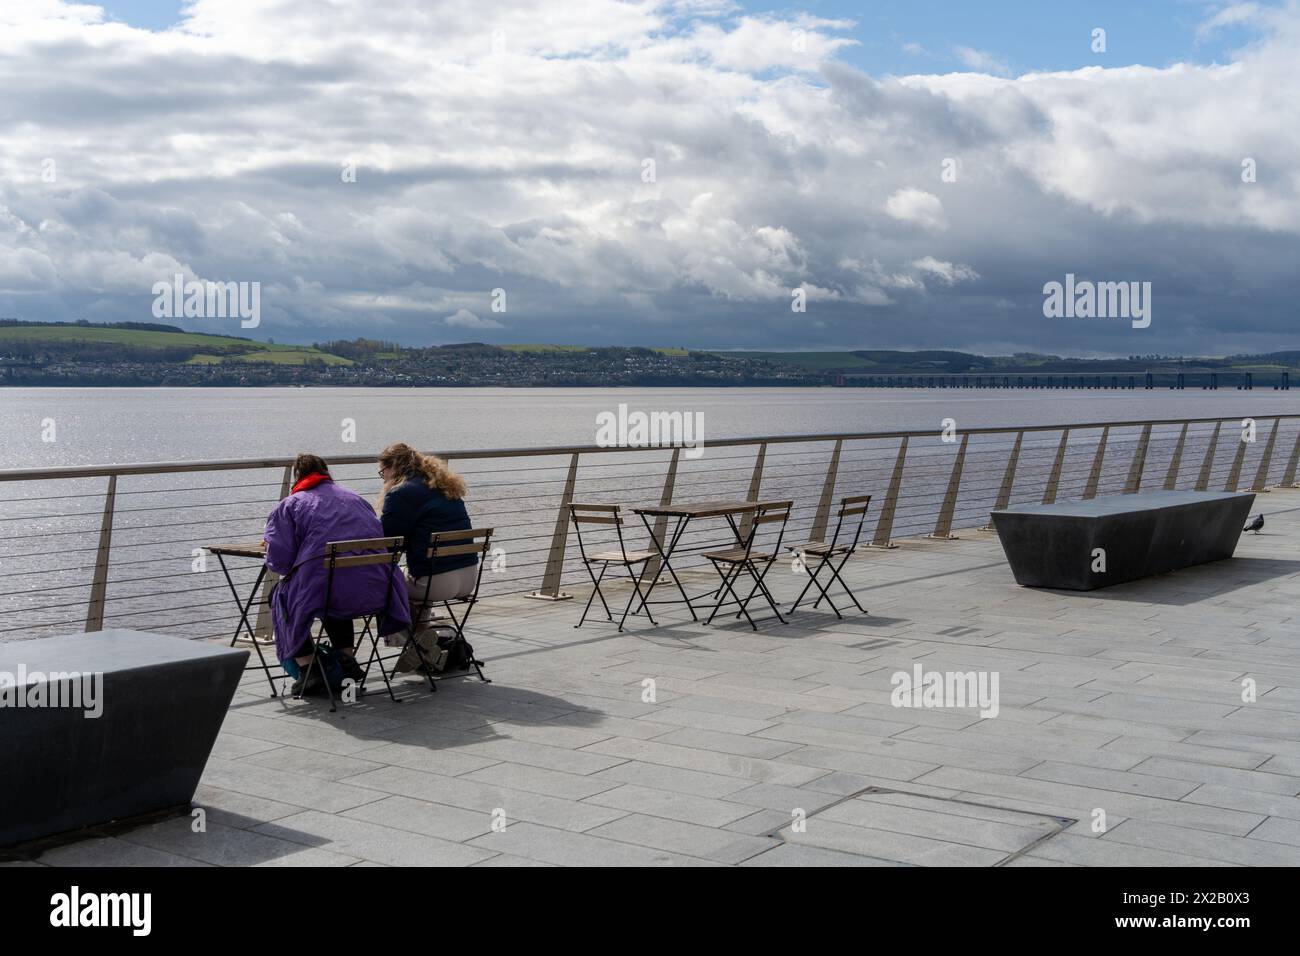 Zwei Personen sitzen an einem Tisch im Freien mit Blick auf die Flussmündung des River Tay in Dundee, Schottland, Großbritannien. Konzept des modernen Stadtlebens, des urbanen Lebens Stockfoto